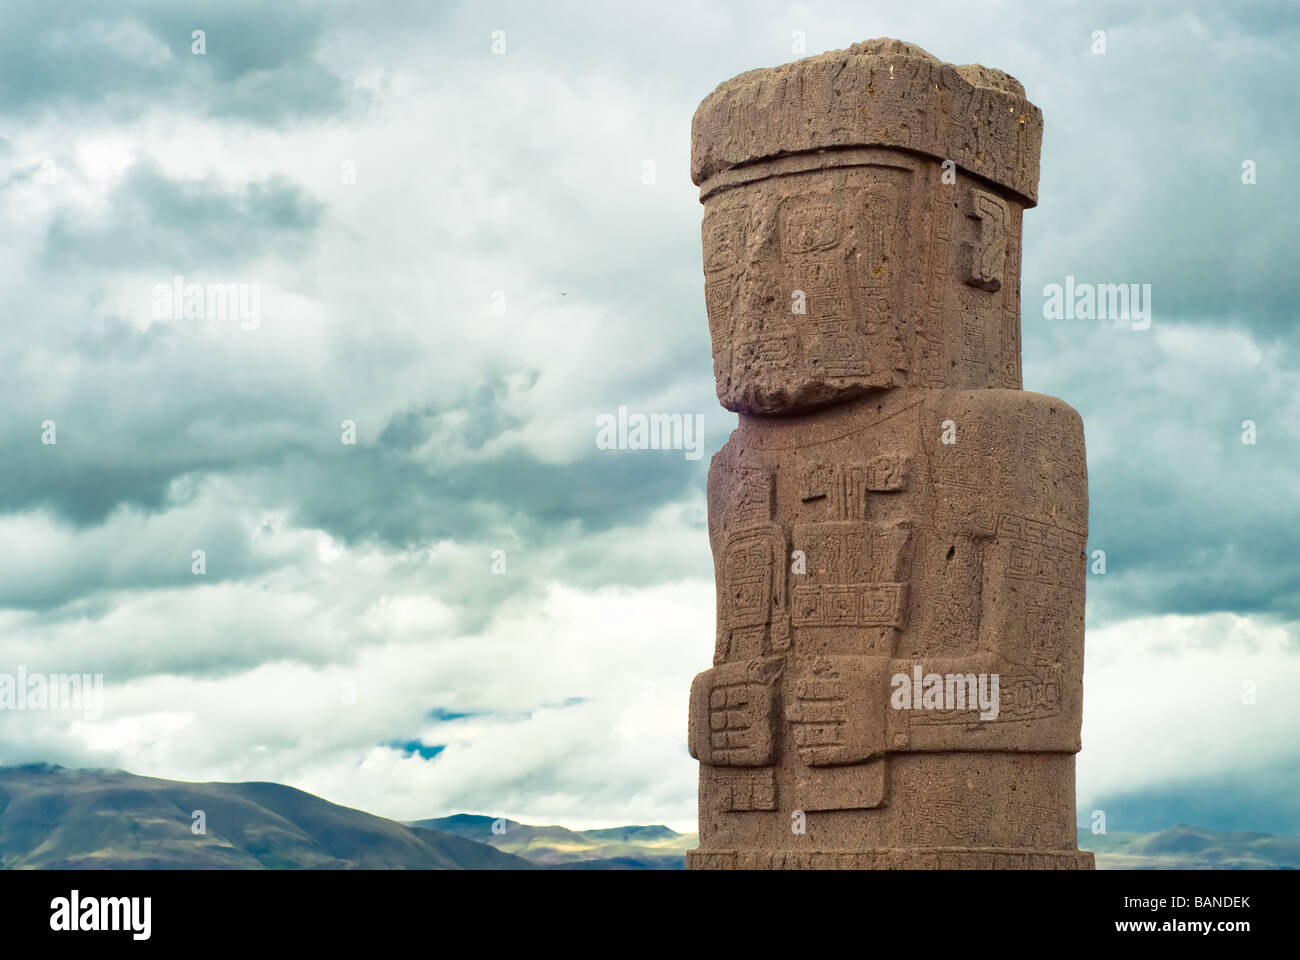 Monolith at Ruins of Tiwanaku Bolivia Stock Photo